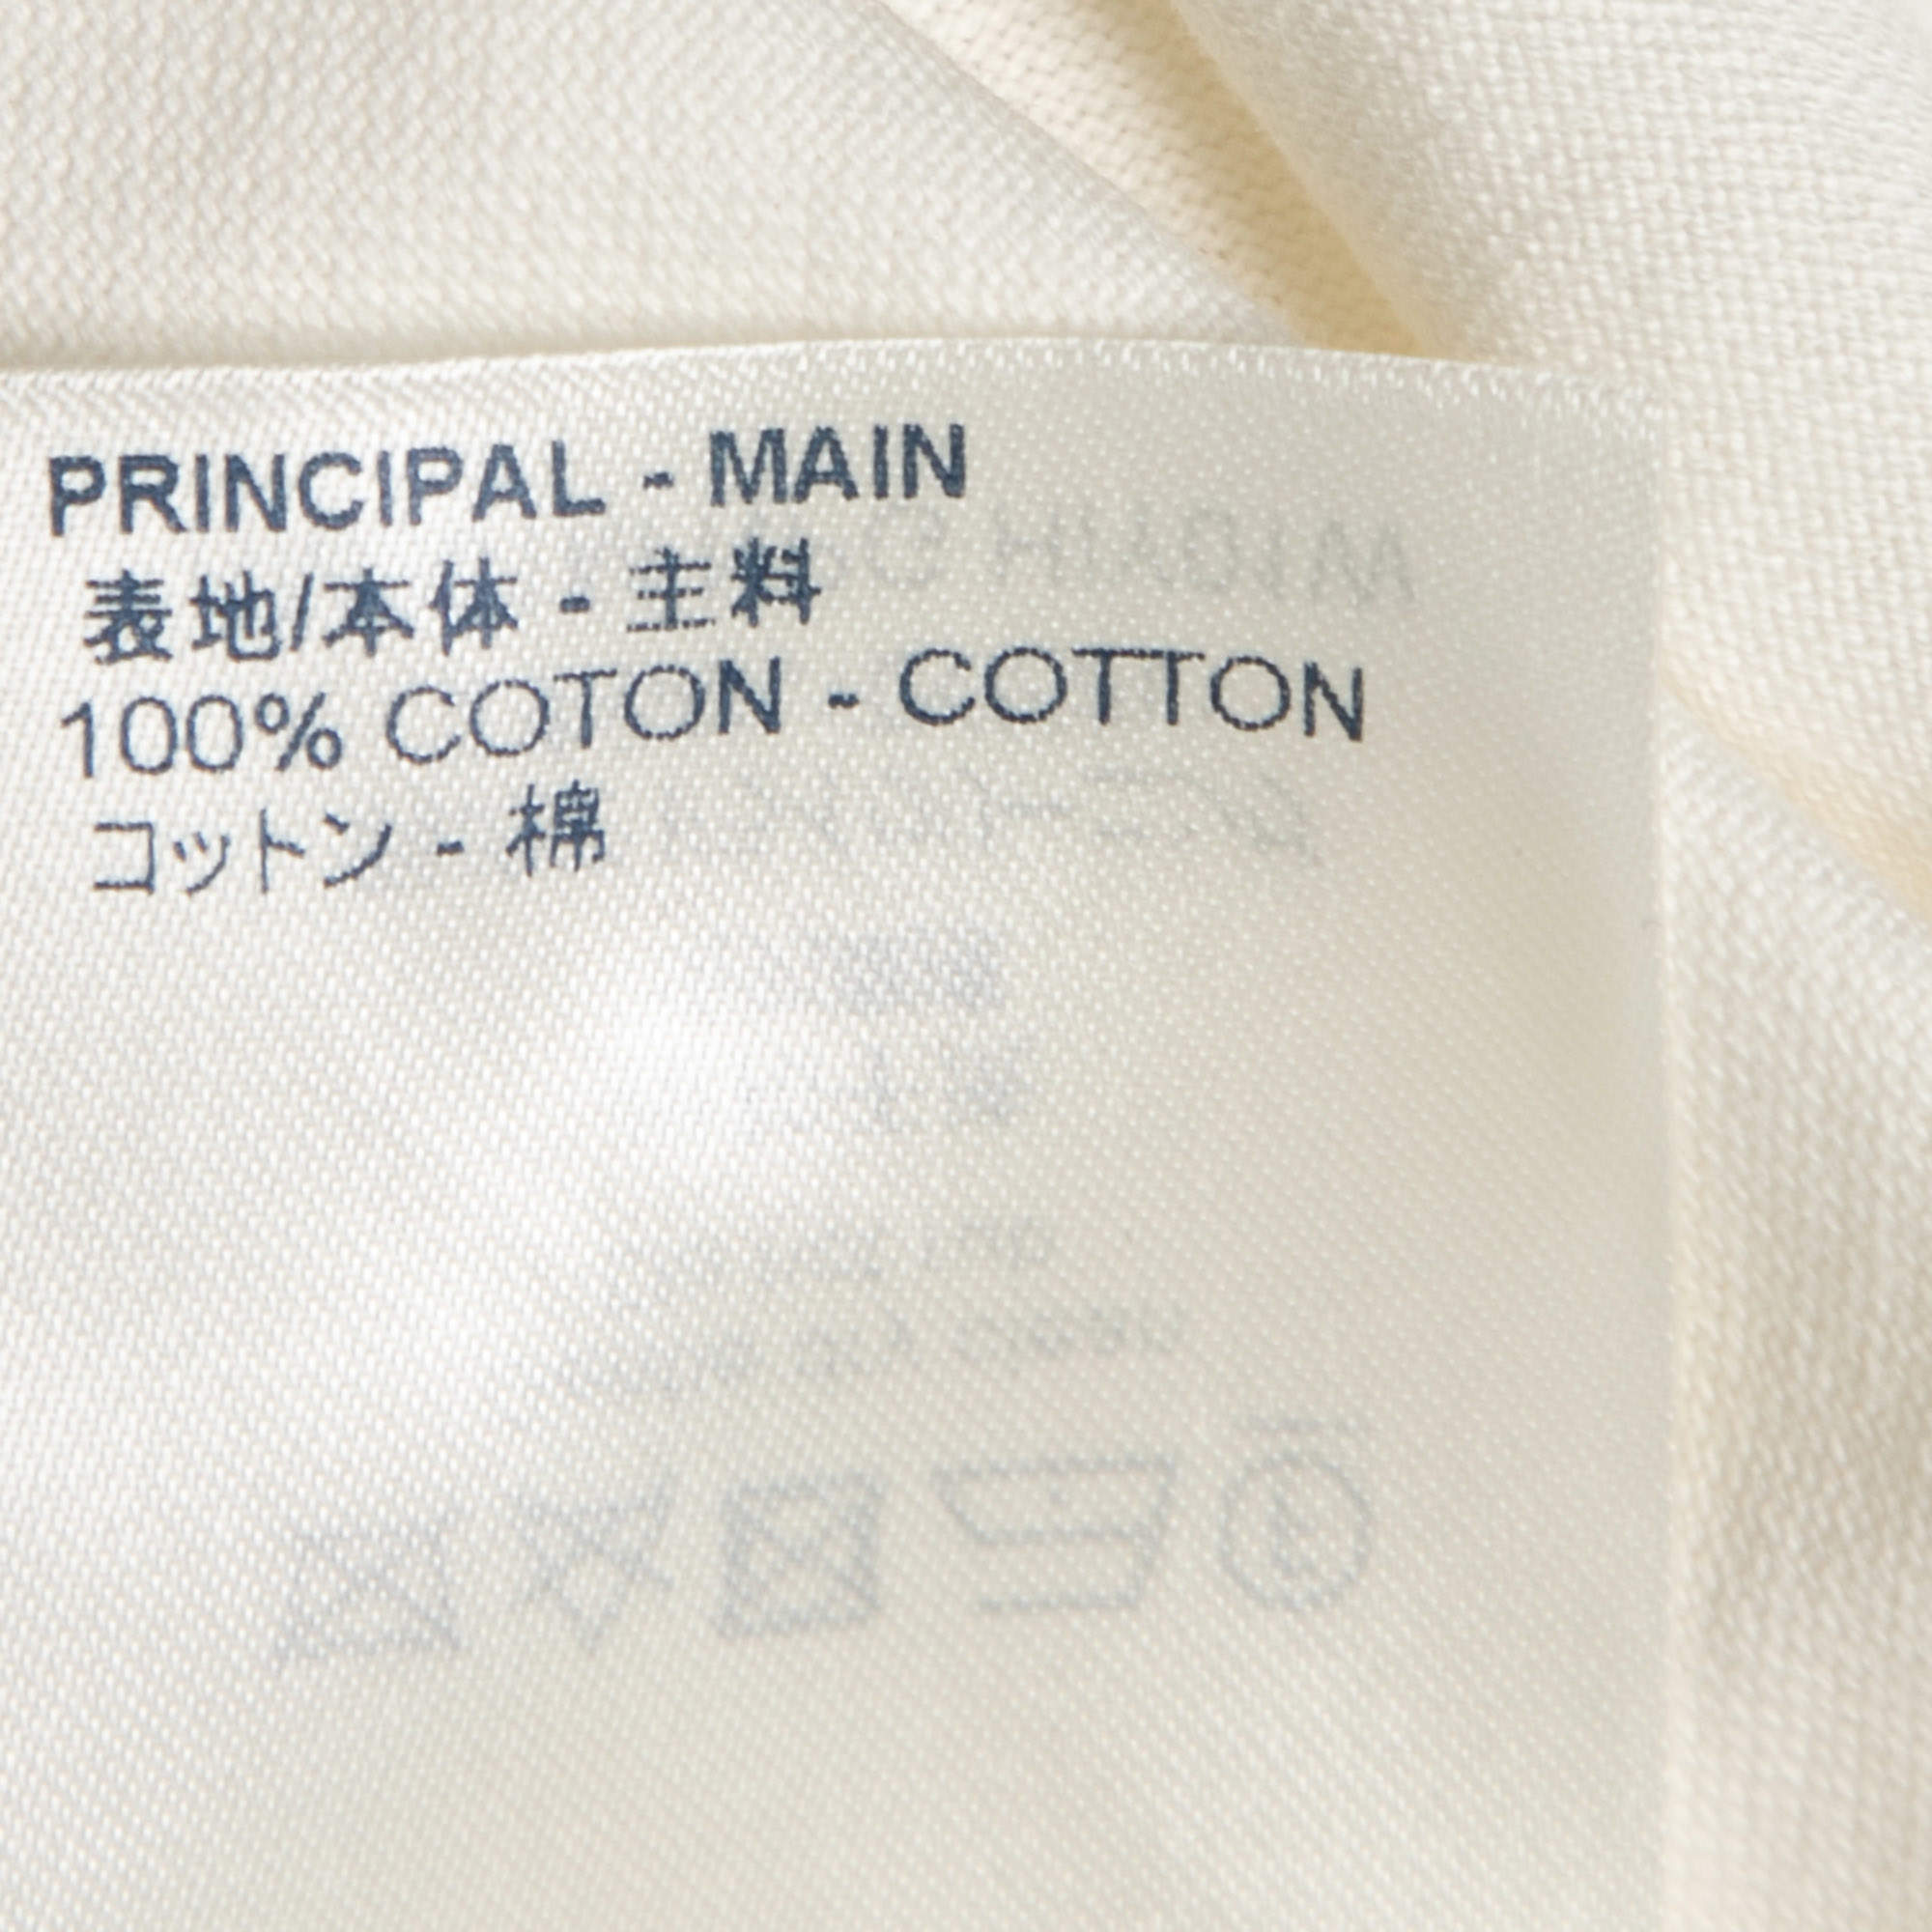 Louis Vuitton Chain jacquard rib collar t-shirt medium